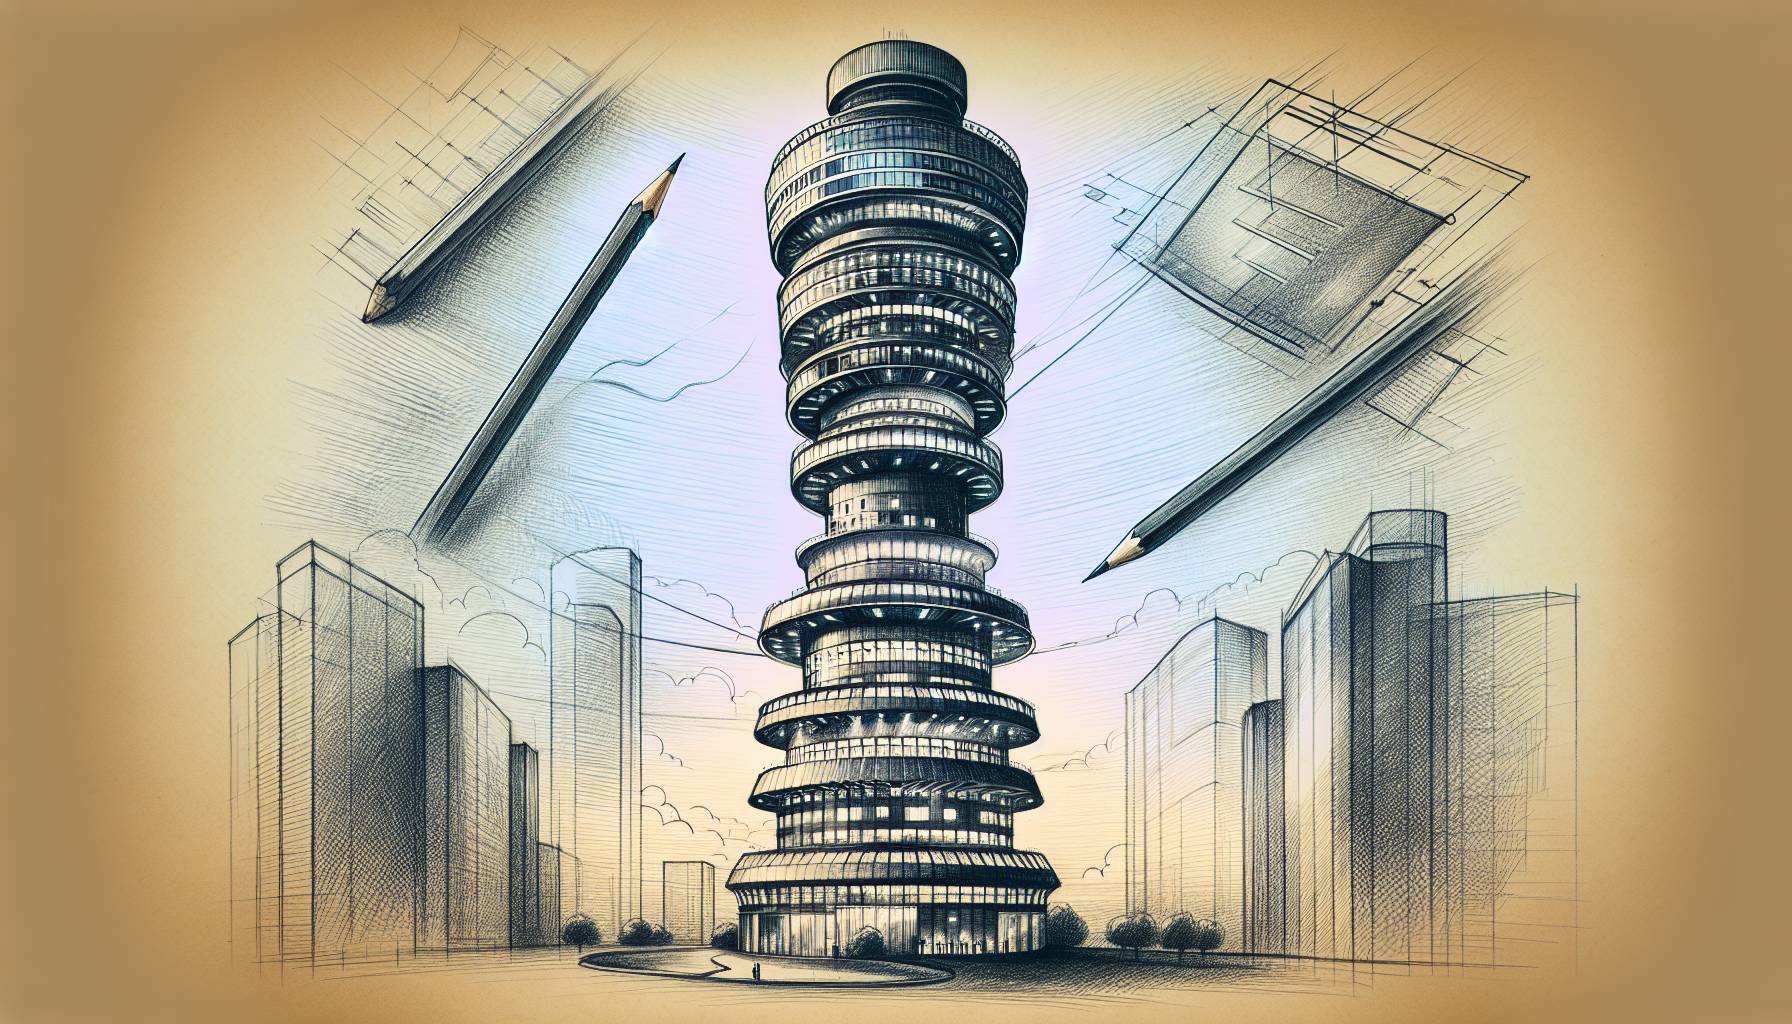 "Repurposed Tower"